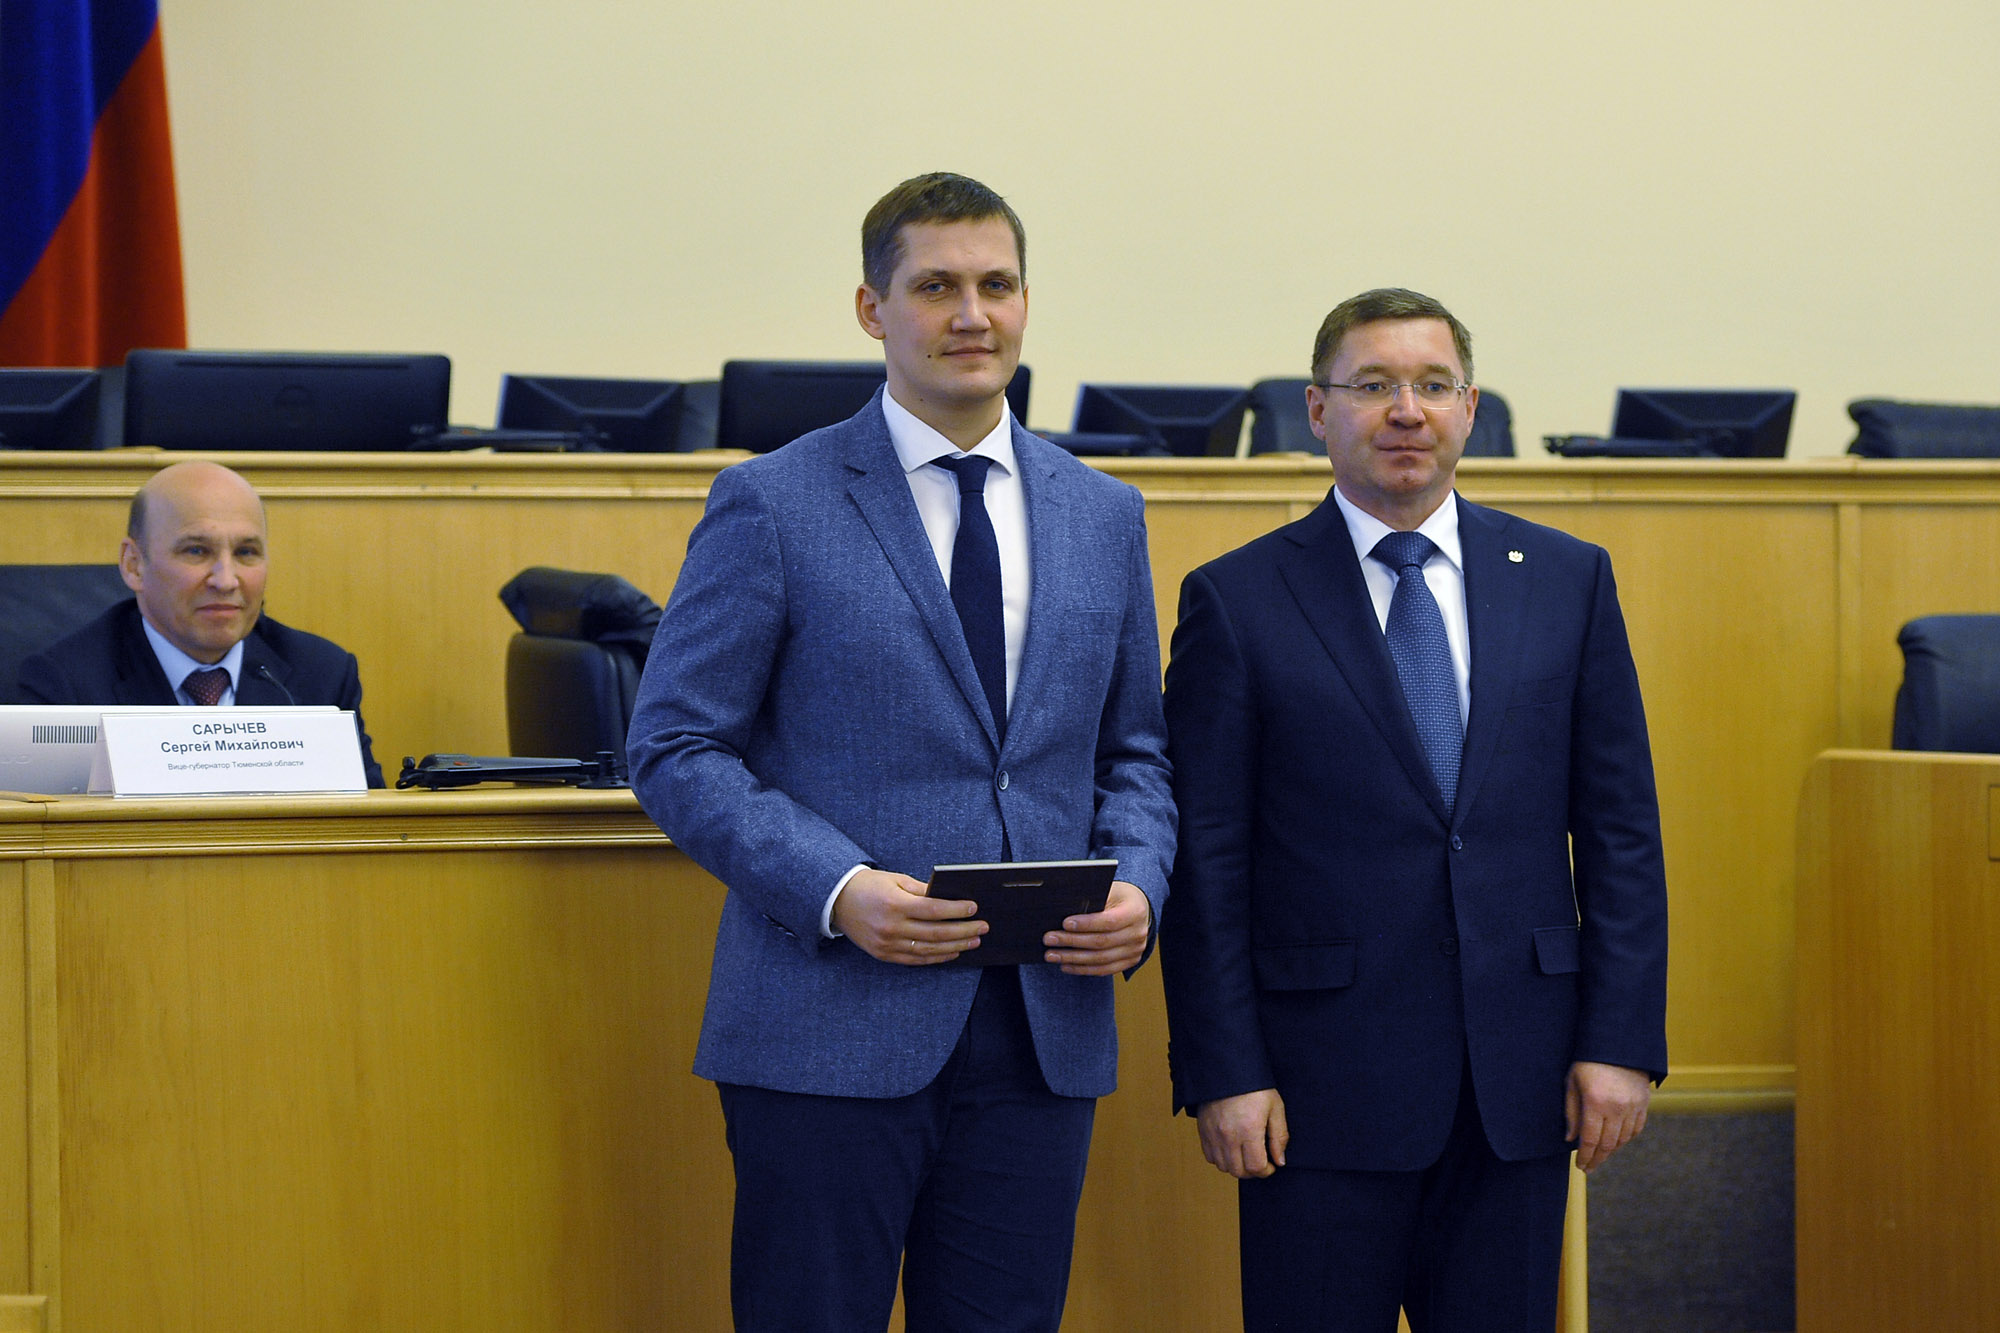 Белявский (слева) был депутатом Тюменской областной думы, затем его назначили директором профильного департамента, а теперь он стал замгубернатора